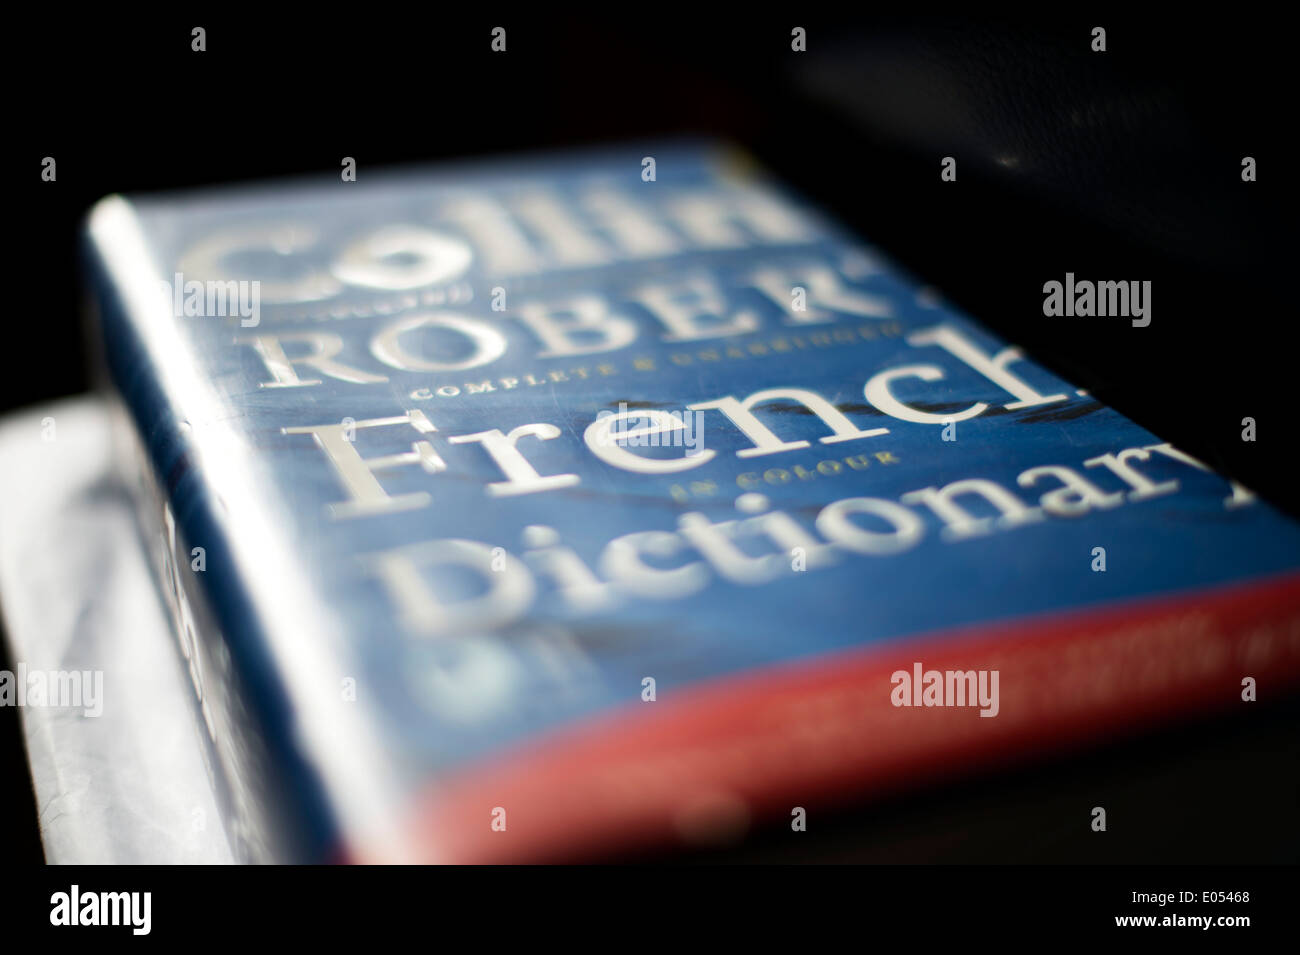 Stock Foto von einem Französisch-Englisch-Wörterbuch Stockfoto